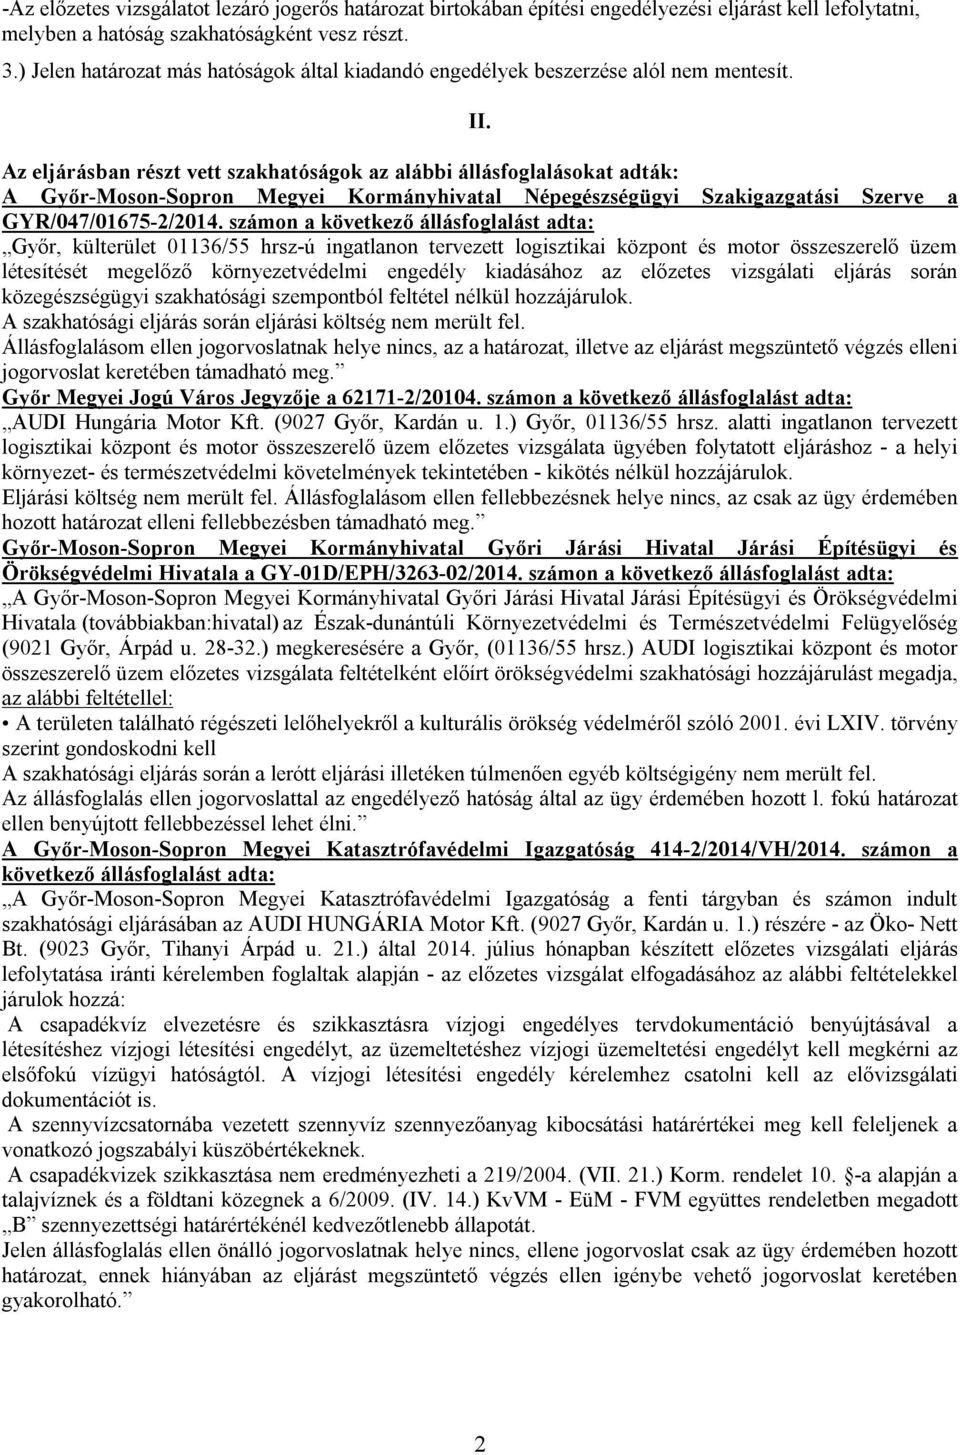 Az eljárásban részt vett szakhatóságok az alábbi állásfoglalásokat adták: A Győr-Moson-Sopron Megyei Kormányhivatal Népegészségügyi Szakigazgatási Szerve a GYR/047/01675-2/2014.